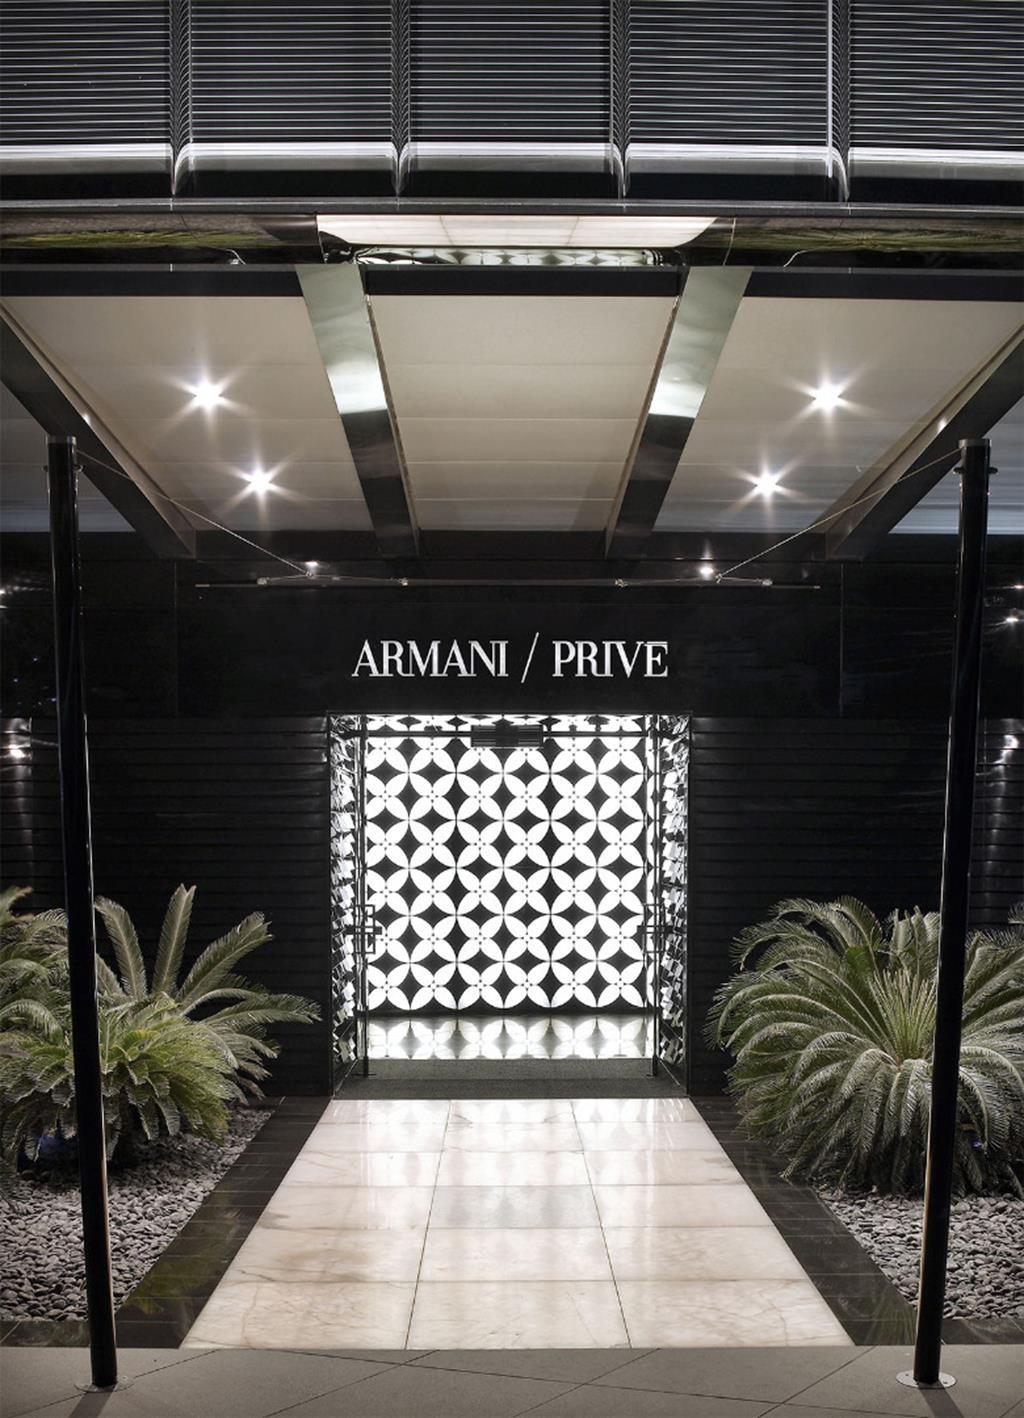 Armani/Privé Lounge Dubai | Centurion Magazine